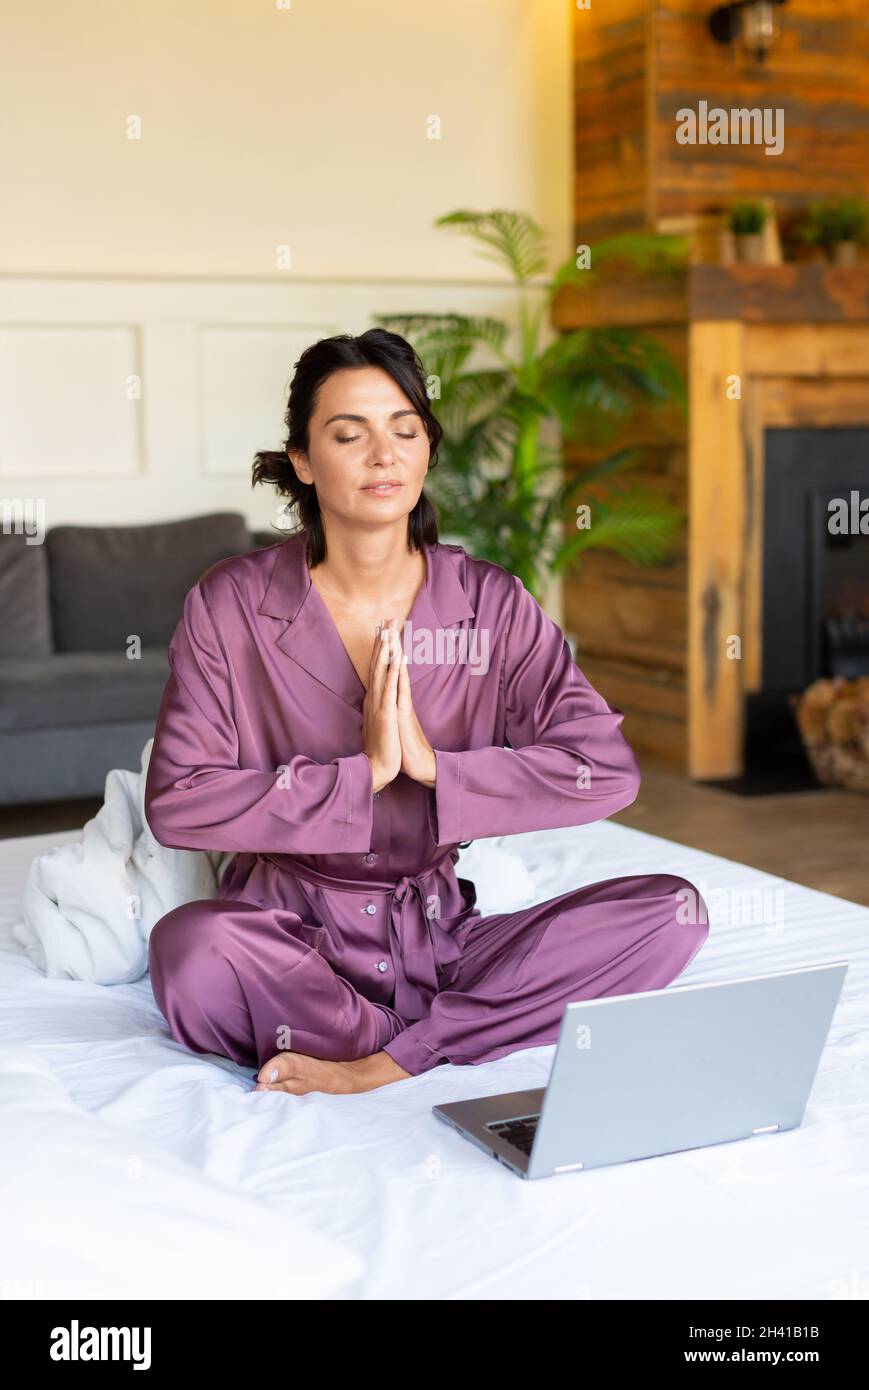 Concetto di ripristinare la forza e l'energia mentale attraverso la pratica dello yoga - donna di mezza età meditating nel letto davanti al monitor del laptop. Foto verticale Foto Stock